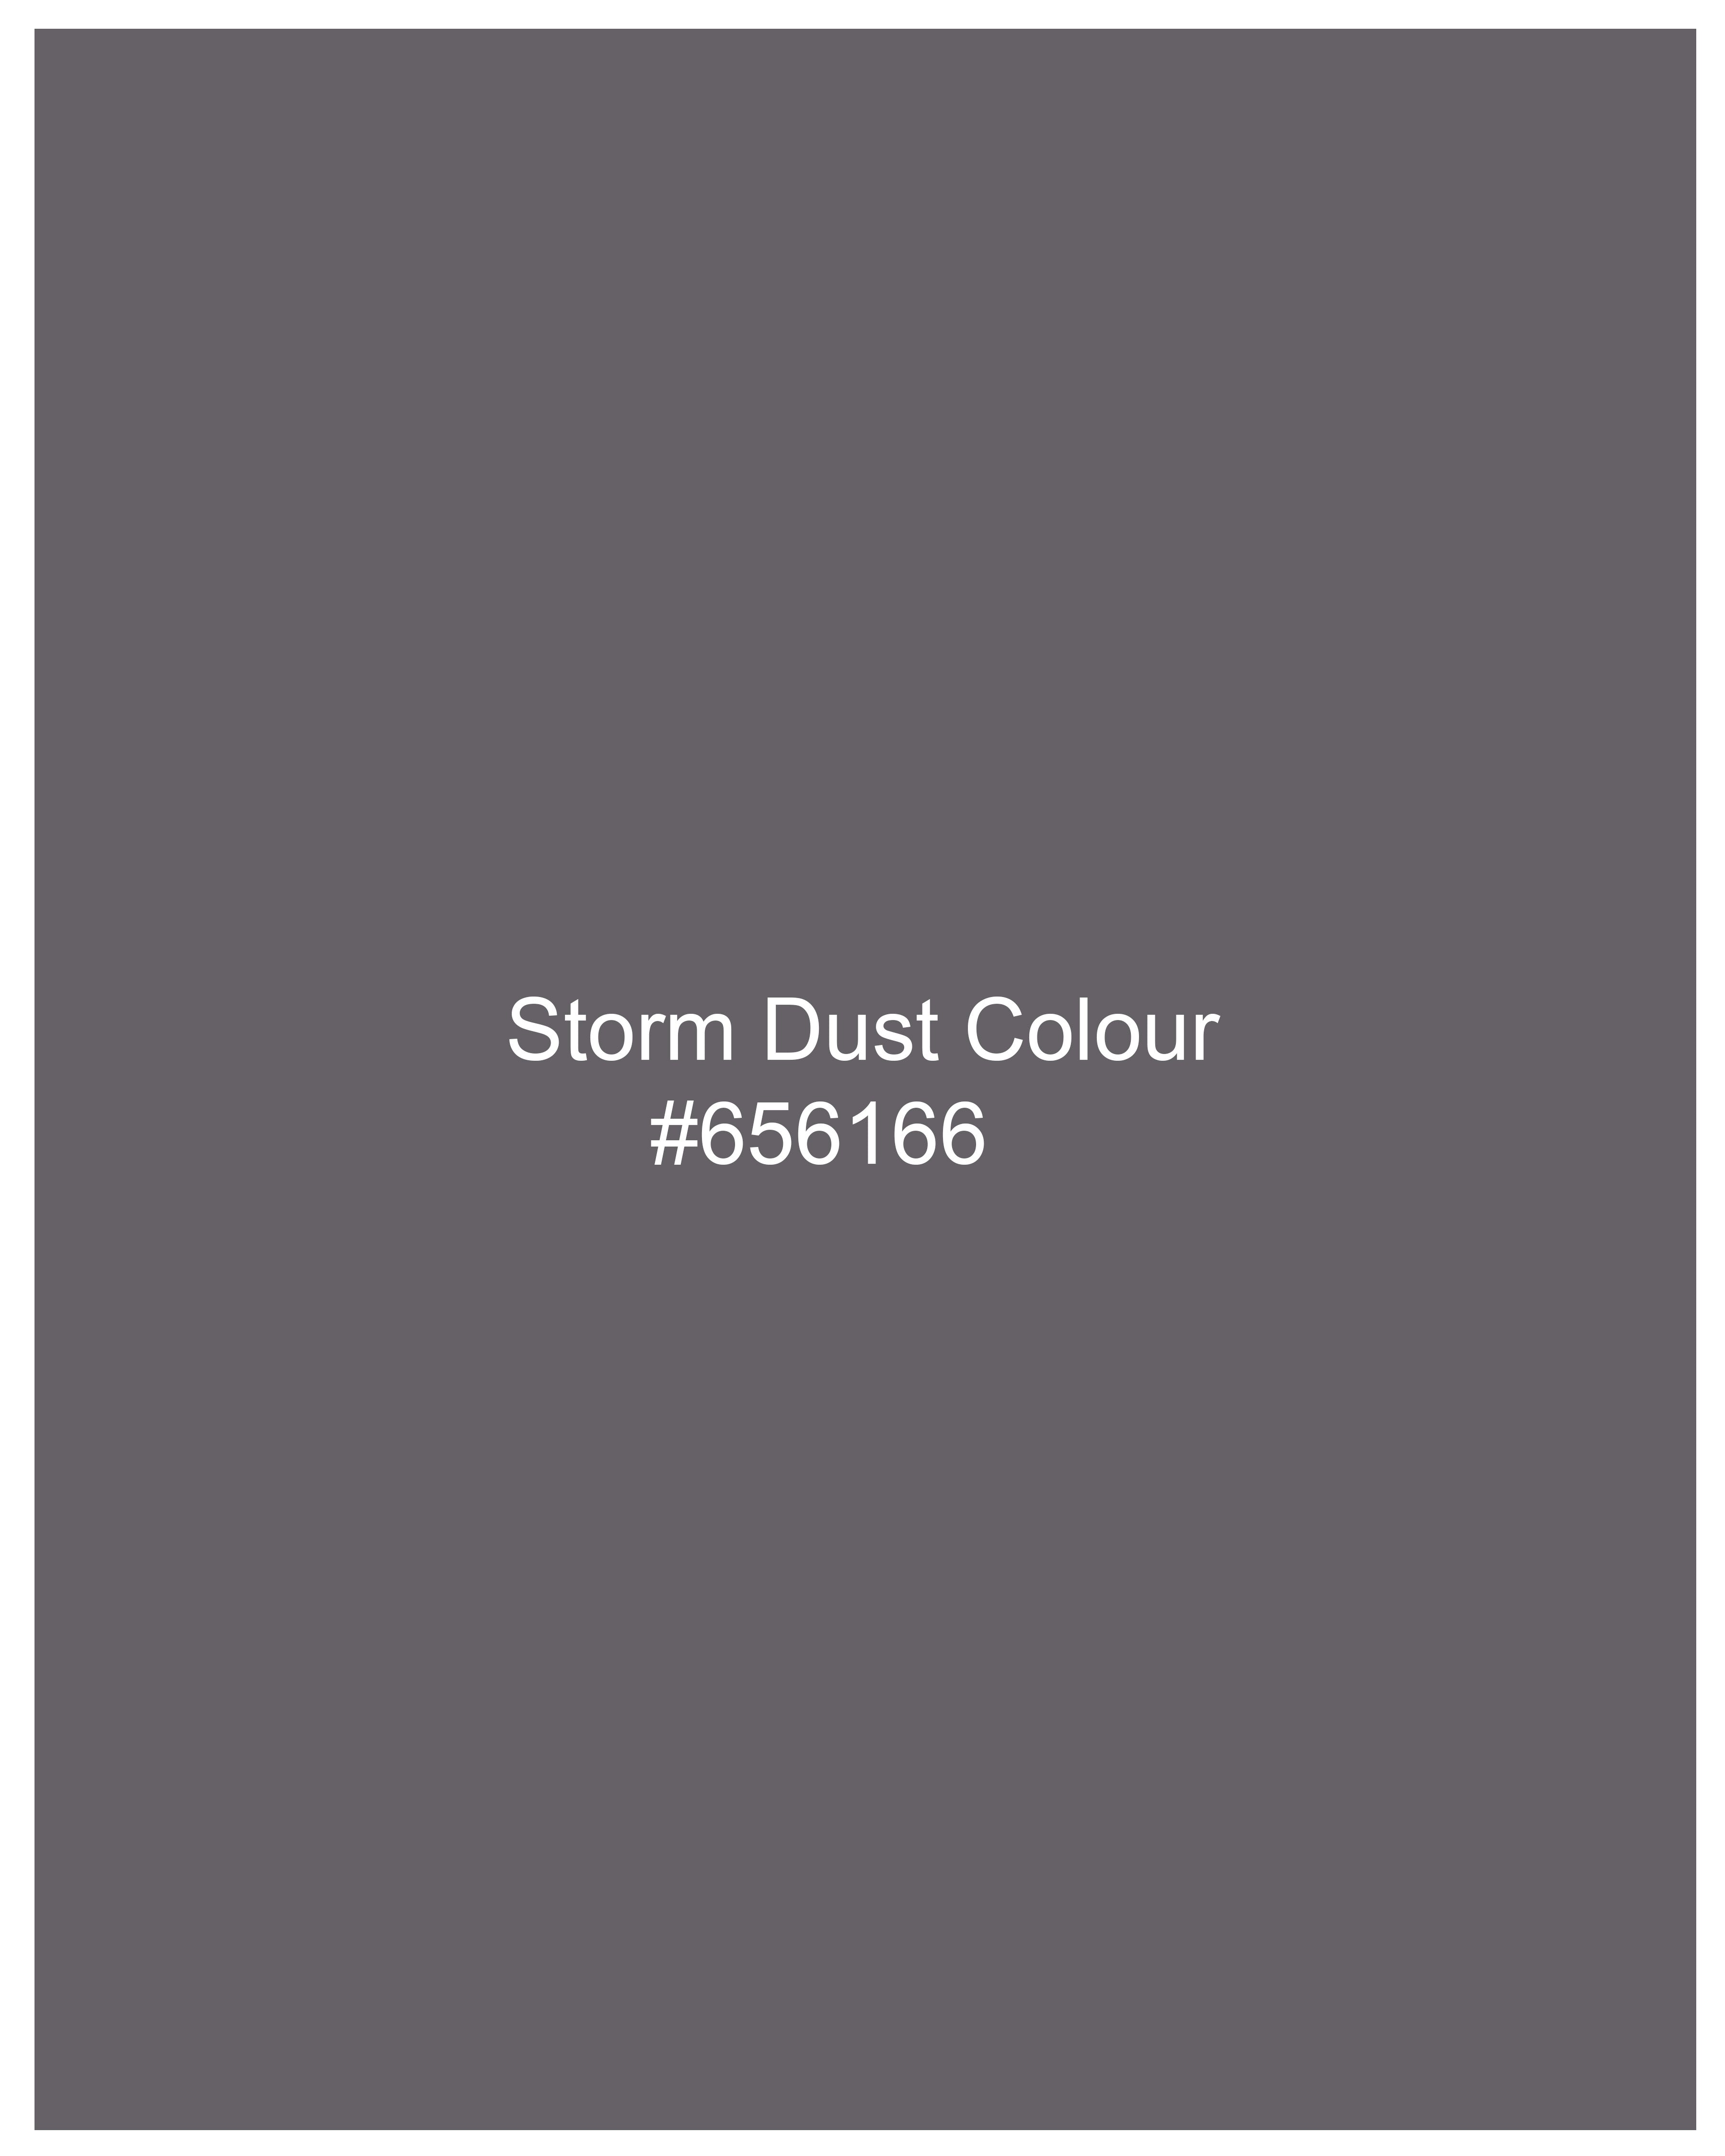 Storm Dust Gray Premium Cotton T-shirt TS652-S, TS652-M, TS652-L, TS652-XL, TS652-XXL